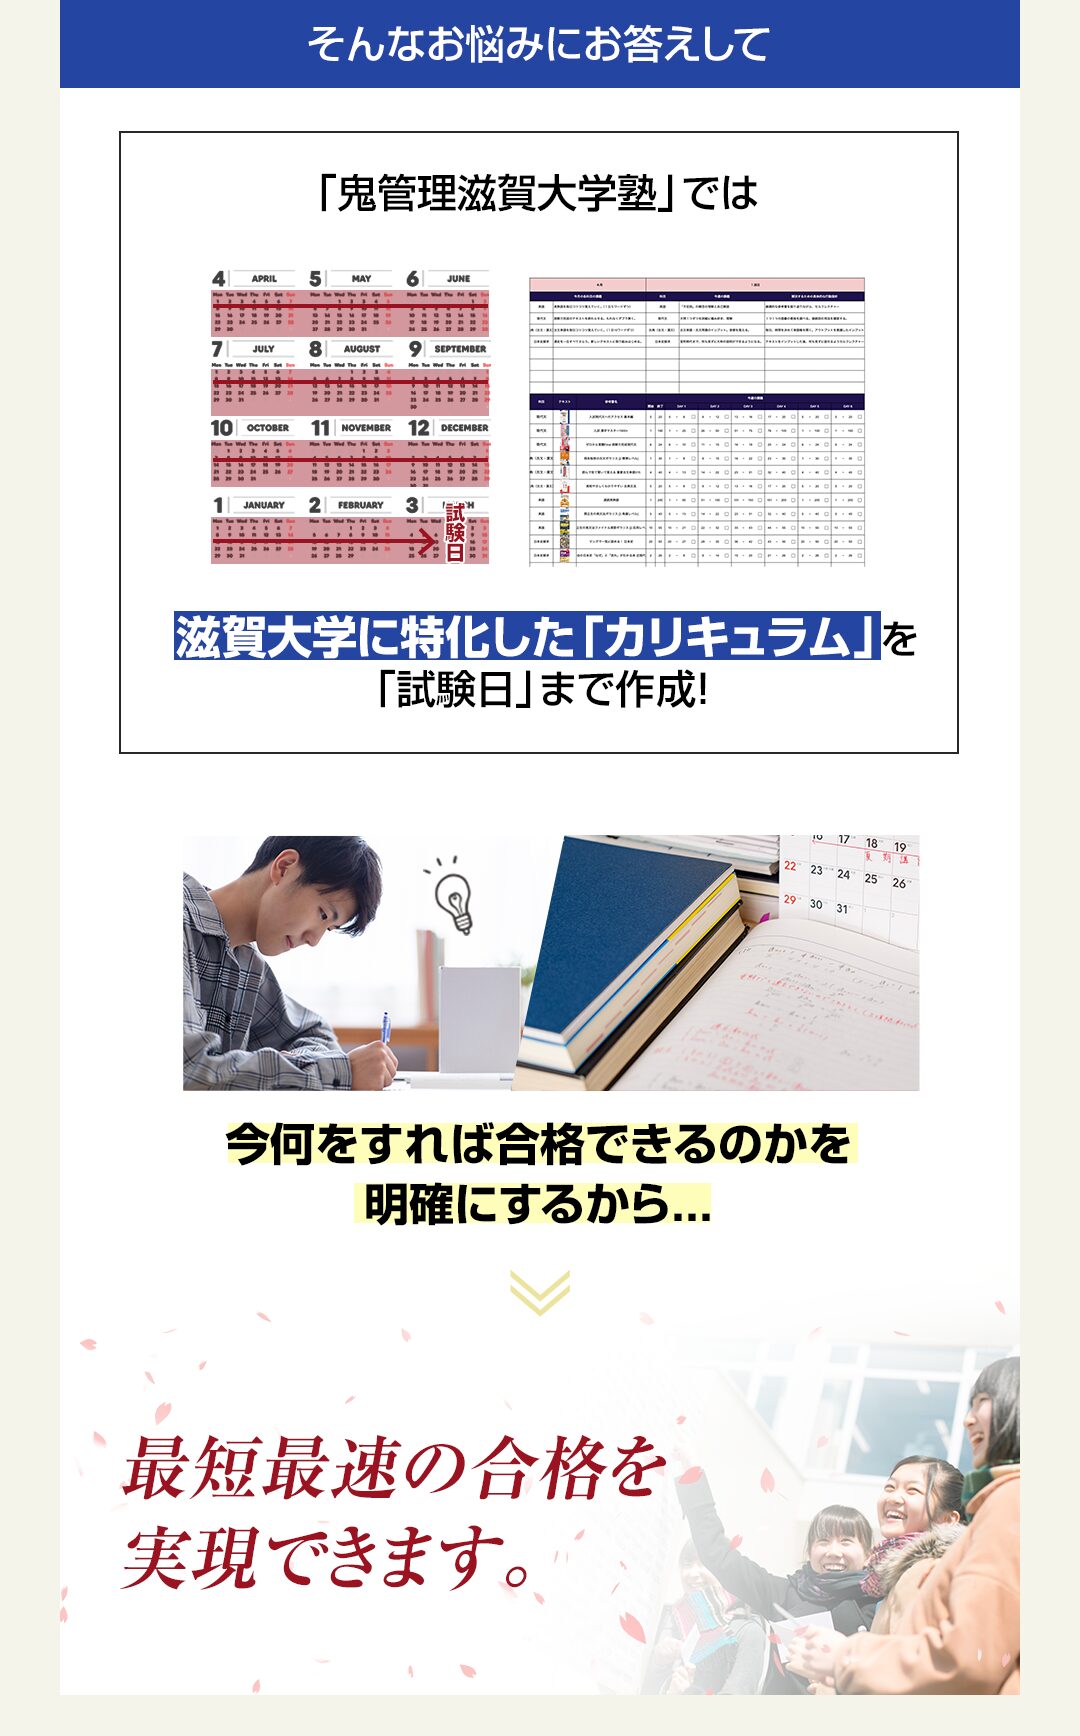 「鬼管理滋賀大学塾」では滋賀大学に特化した「カリキュラム」を「試験日」まで作成